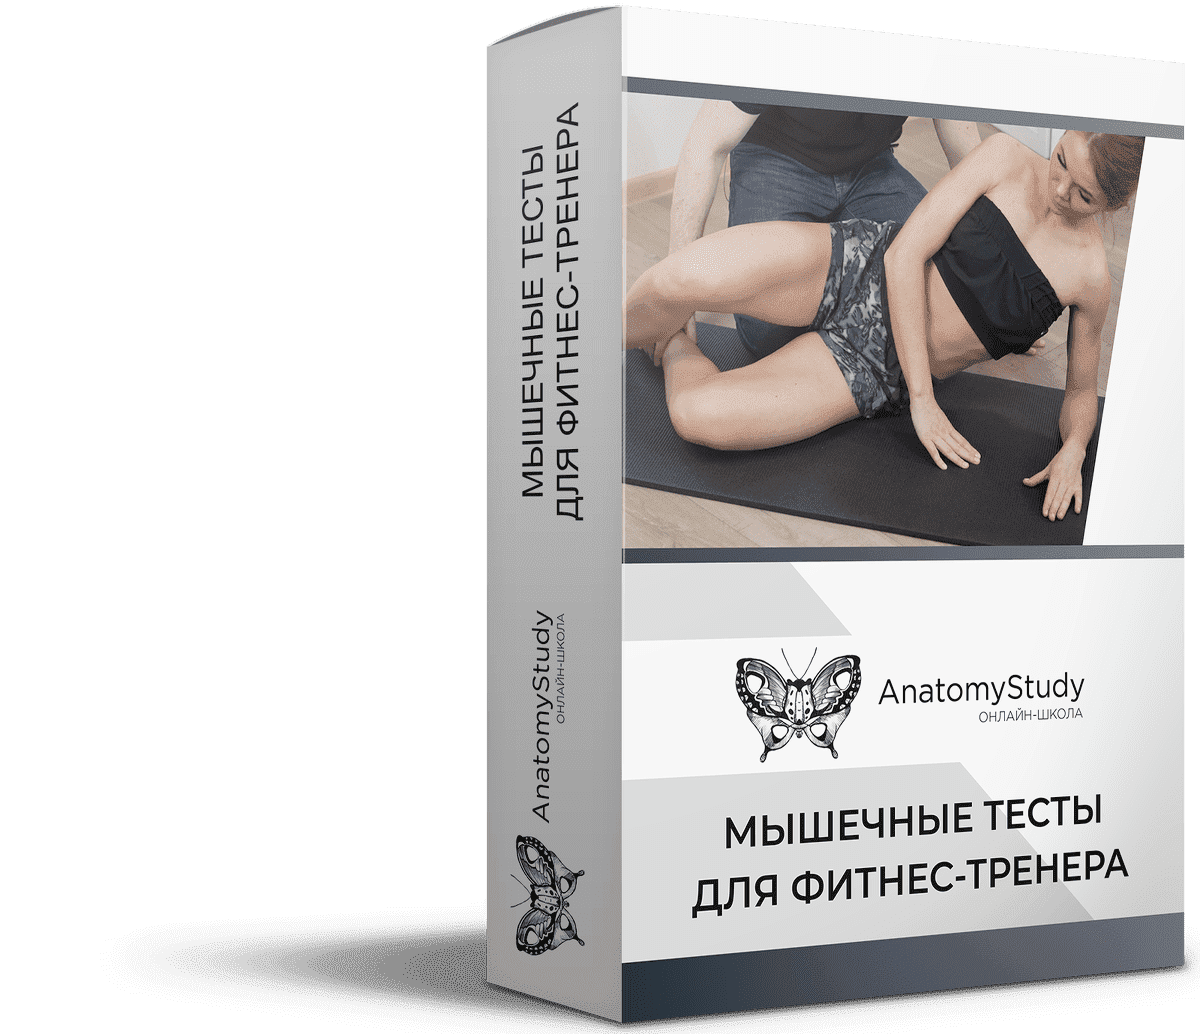 Скачать - Андрей Богатырев. Мышечные тесты для фитнес тренера (2021).png